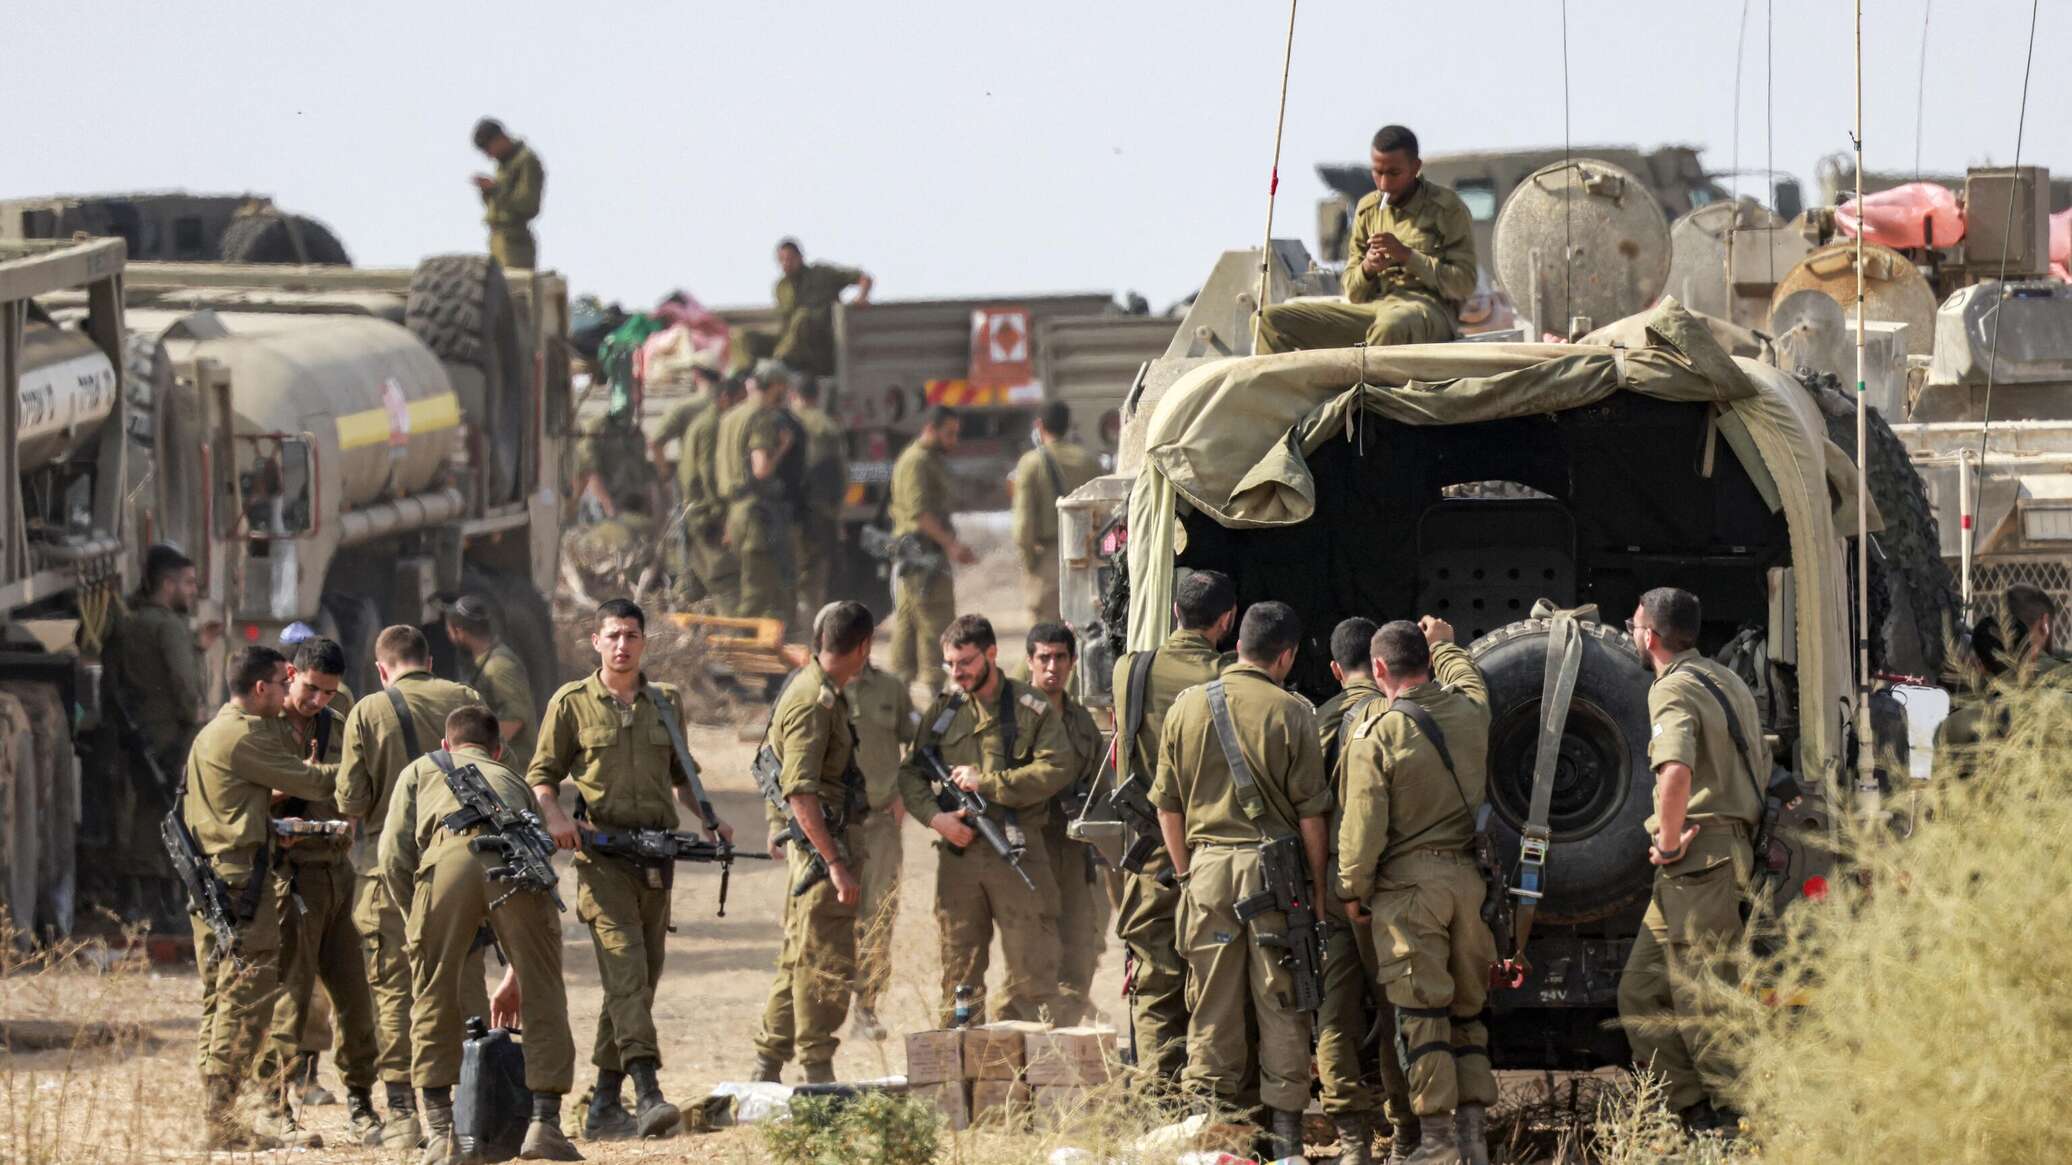 الجيش الإسرائيلي يعلن تدمير نقطة إطلاق نار لـ"حماس" بواسطة "اللدغة الحديدية"... فيديو